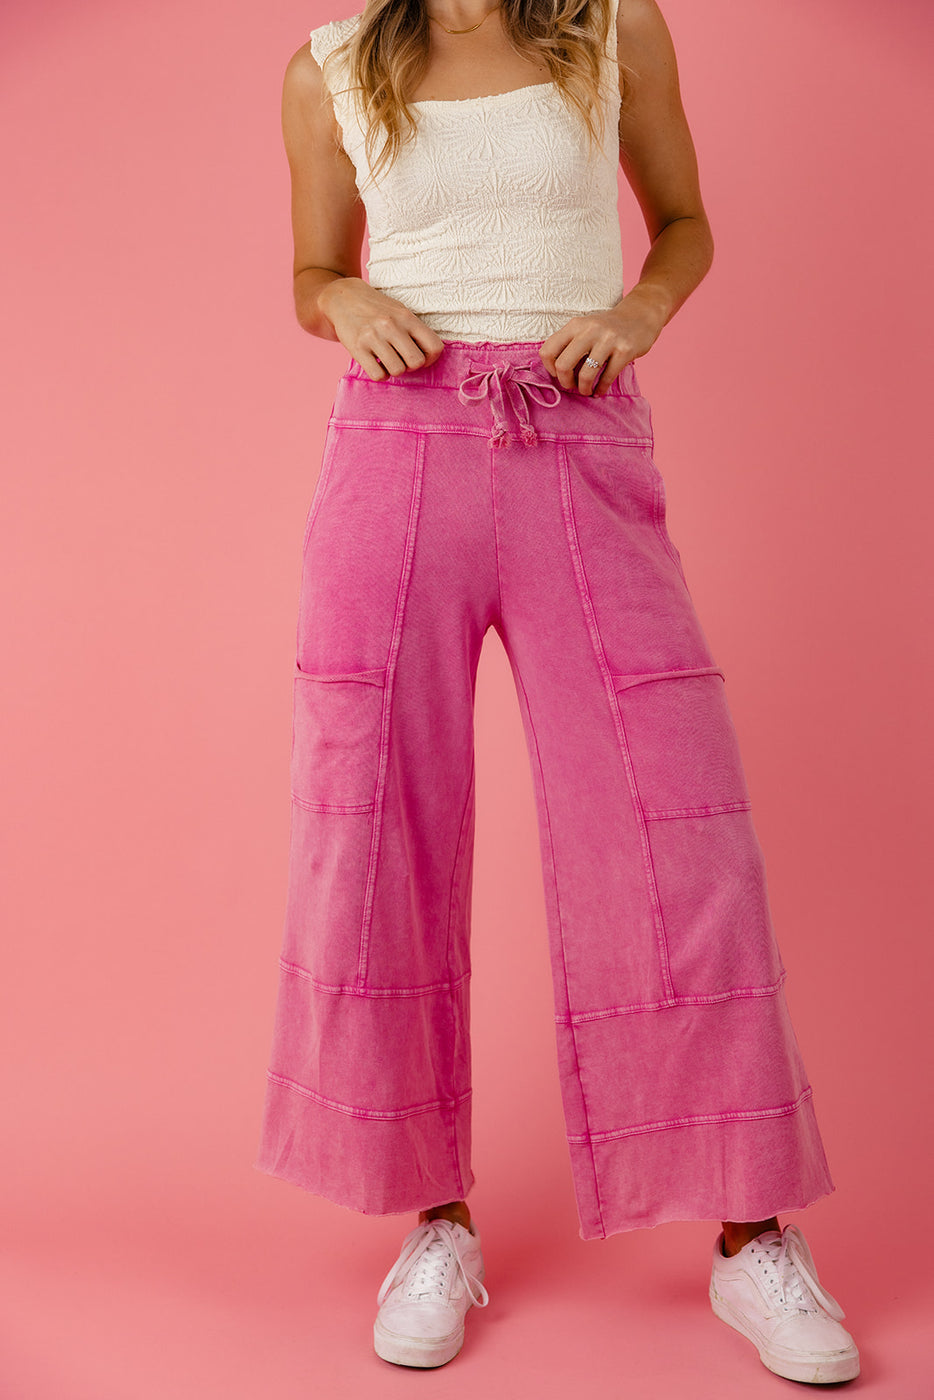 a woman wearing pink pants